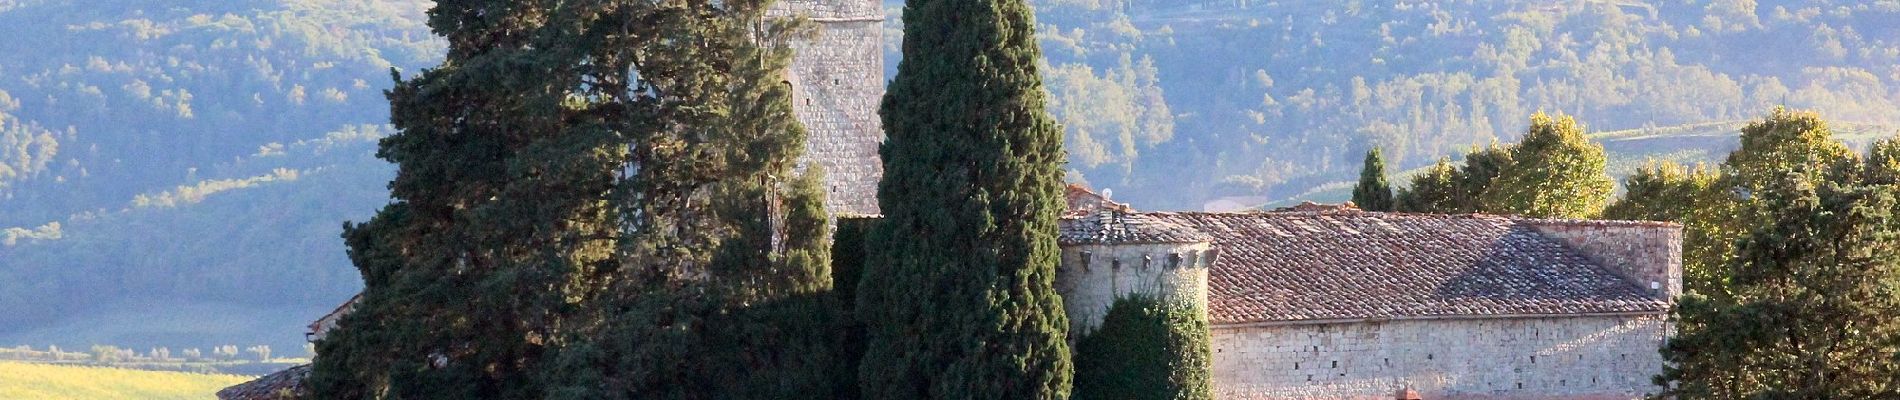 Tour Zu Fuß Gaiole in Chianti - Trekking tra i castelli 11 - Photo